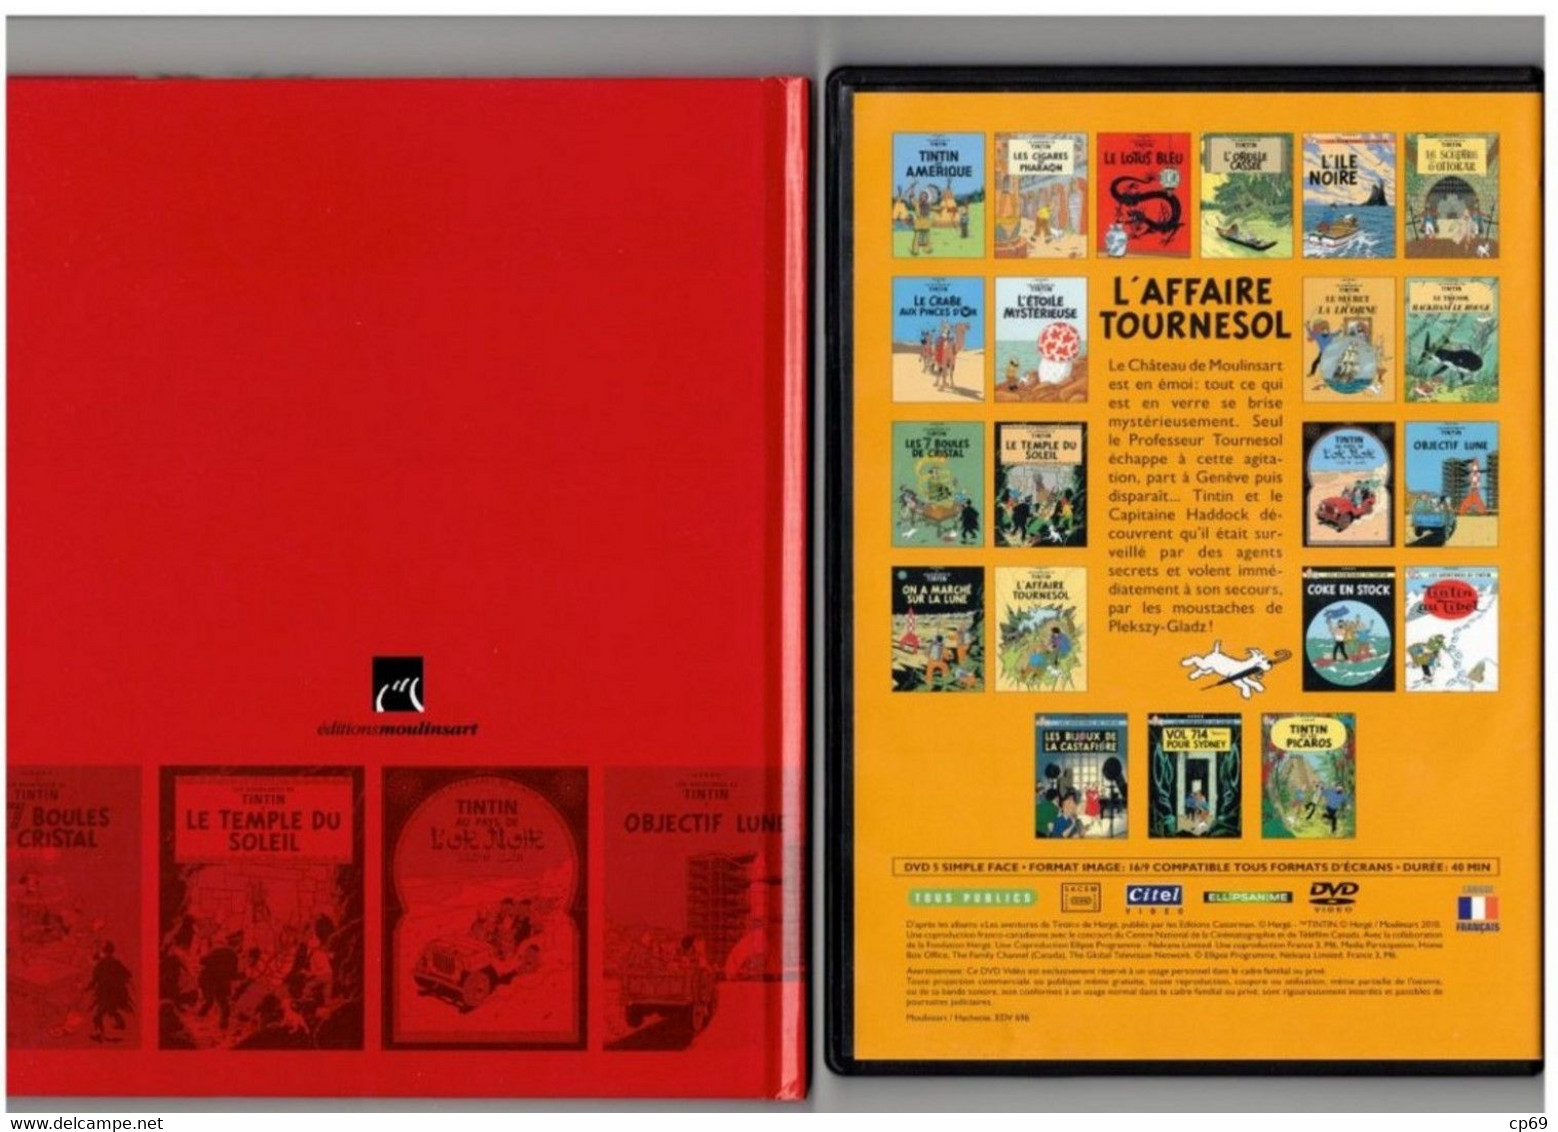 Tintin Hergé / Moulinsart 2010 Milou Chien Dog Cane L'Affaire Tournesol N°15 Capitaine Haddock DVD + Livret Explicatif - Animatie